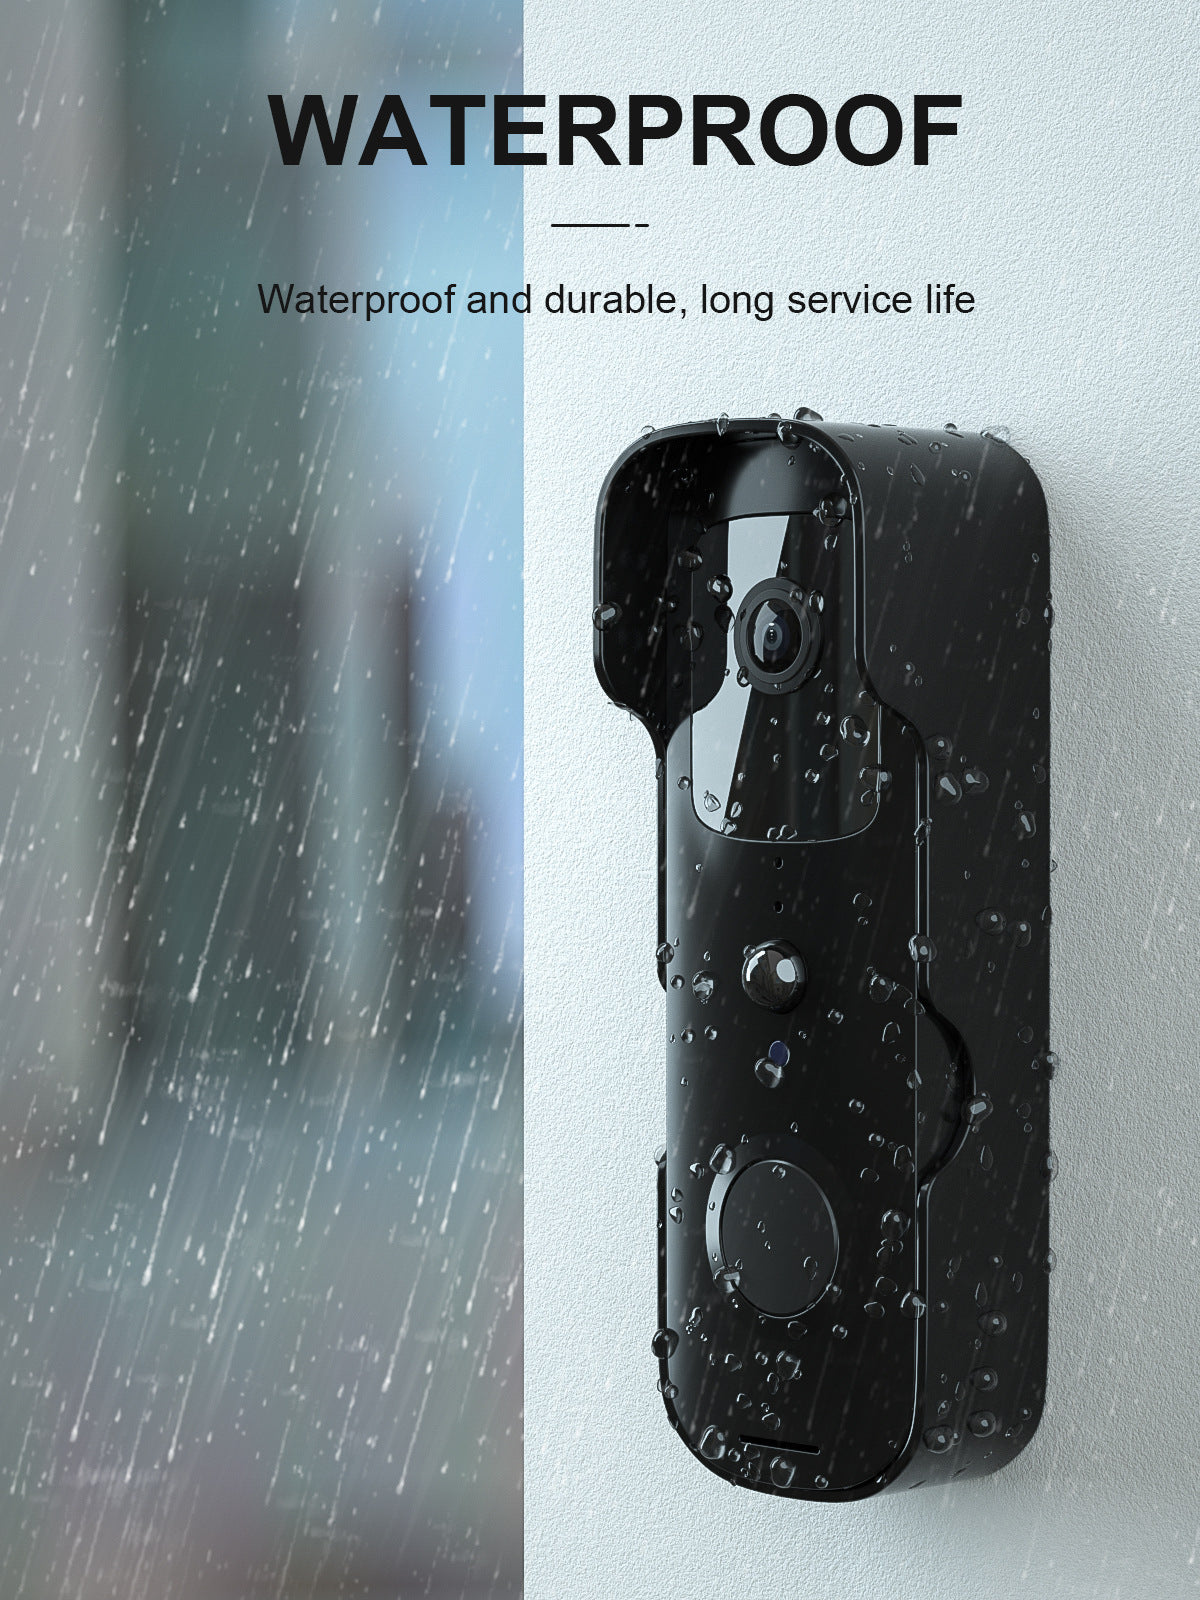 Video Doorbell Intercom Mobile Phone Monitoring Wifi Doorbell